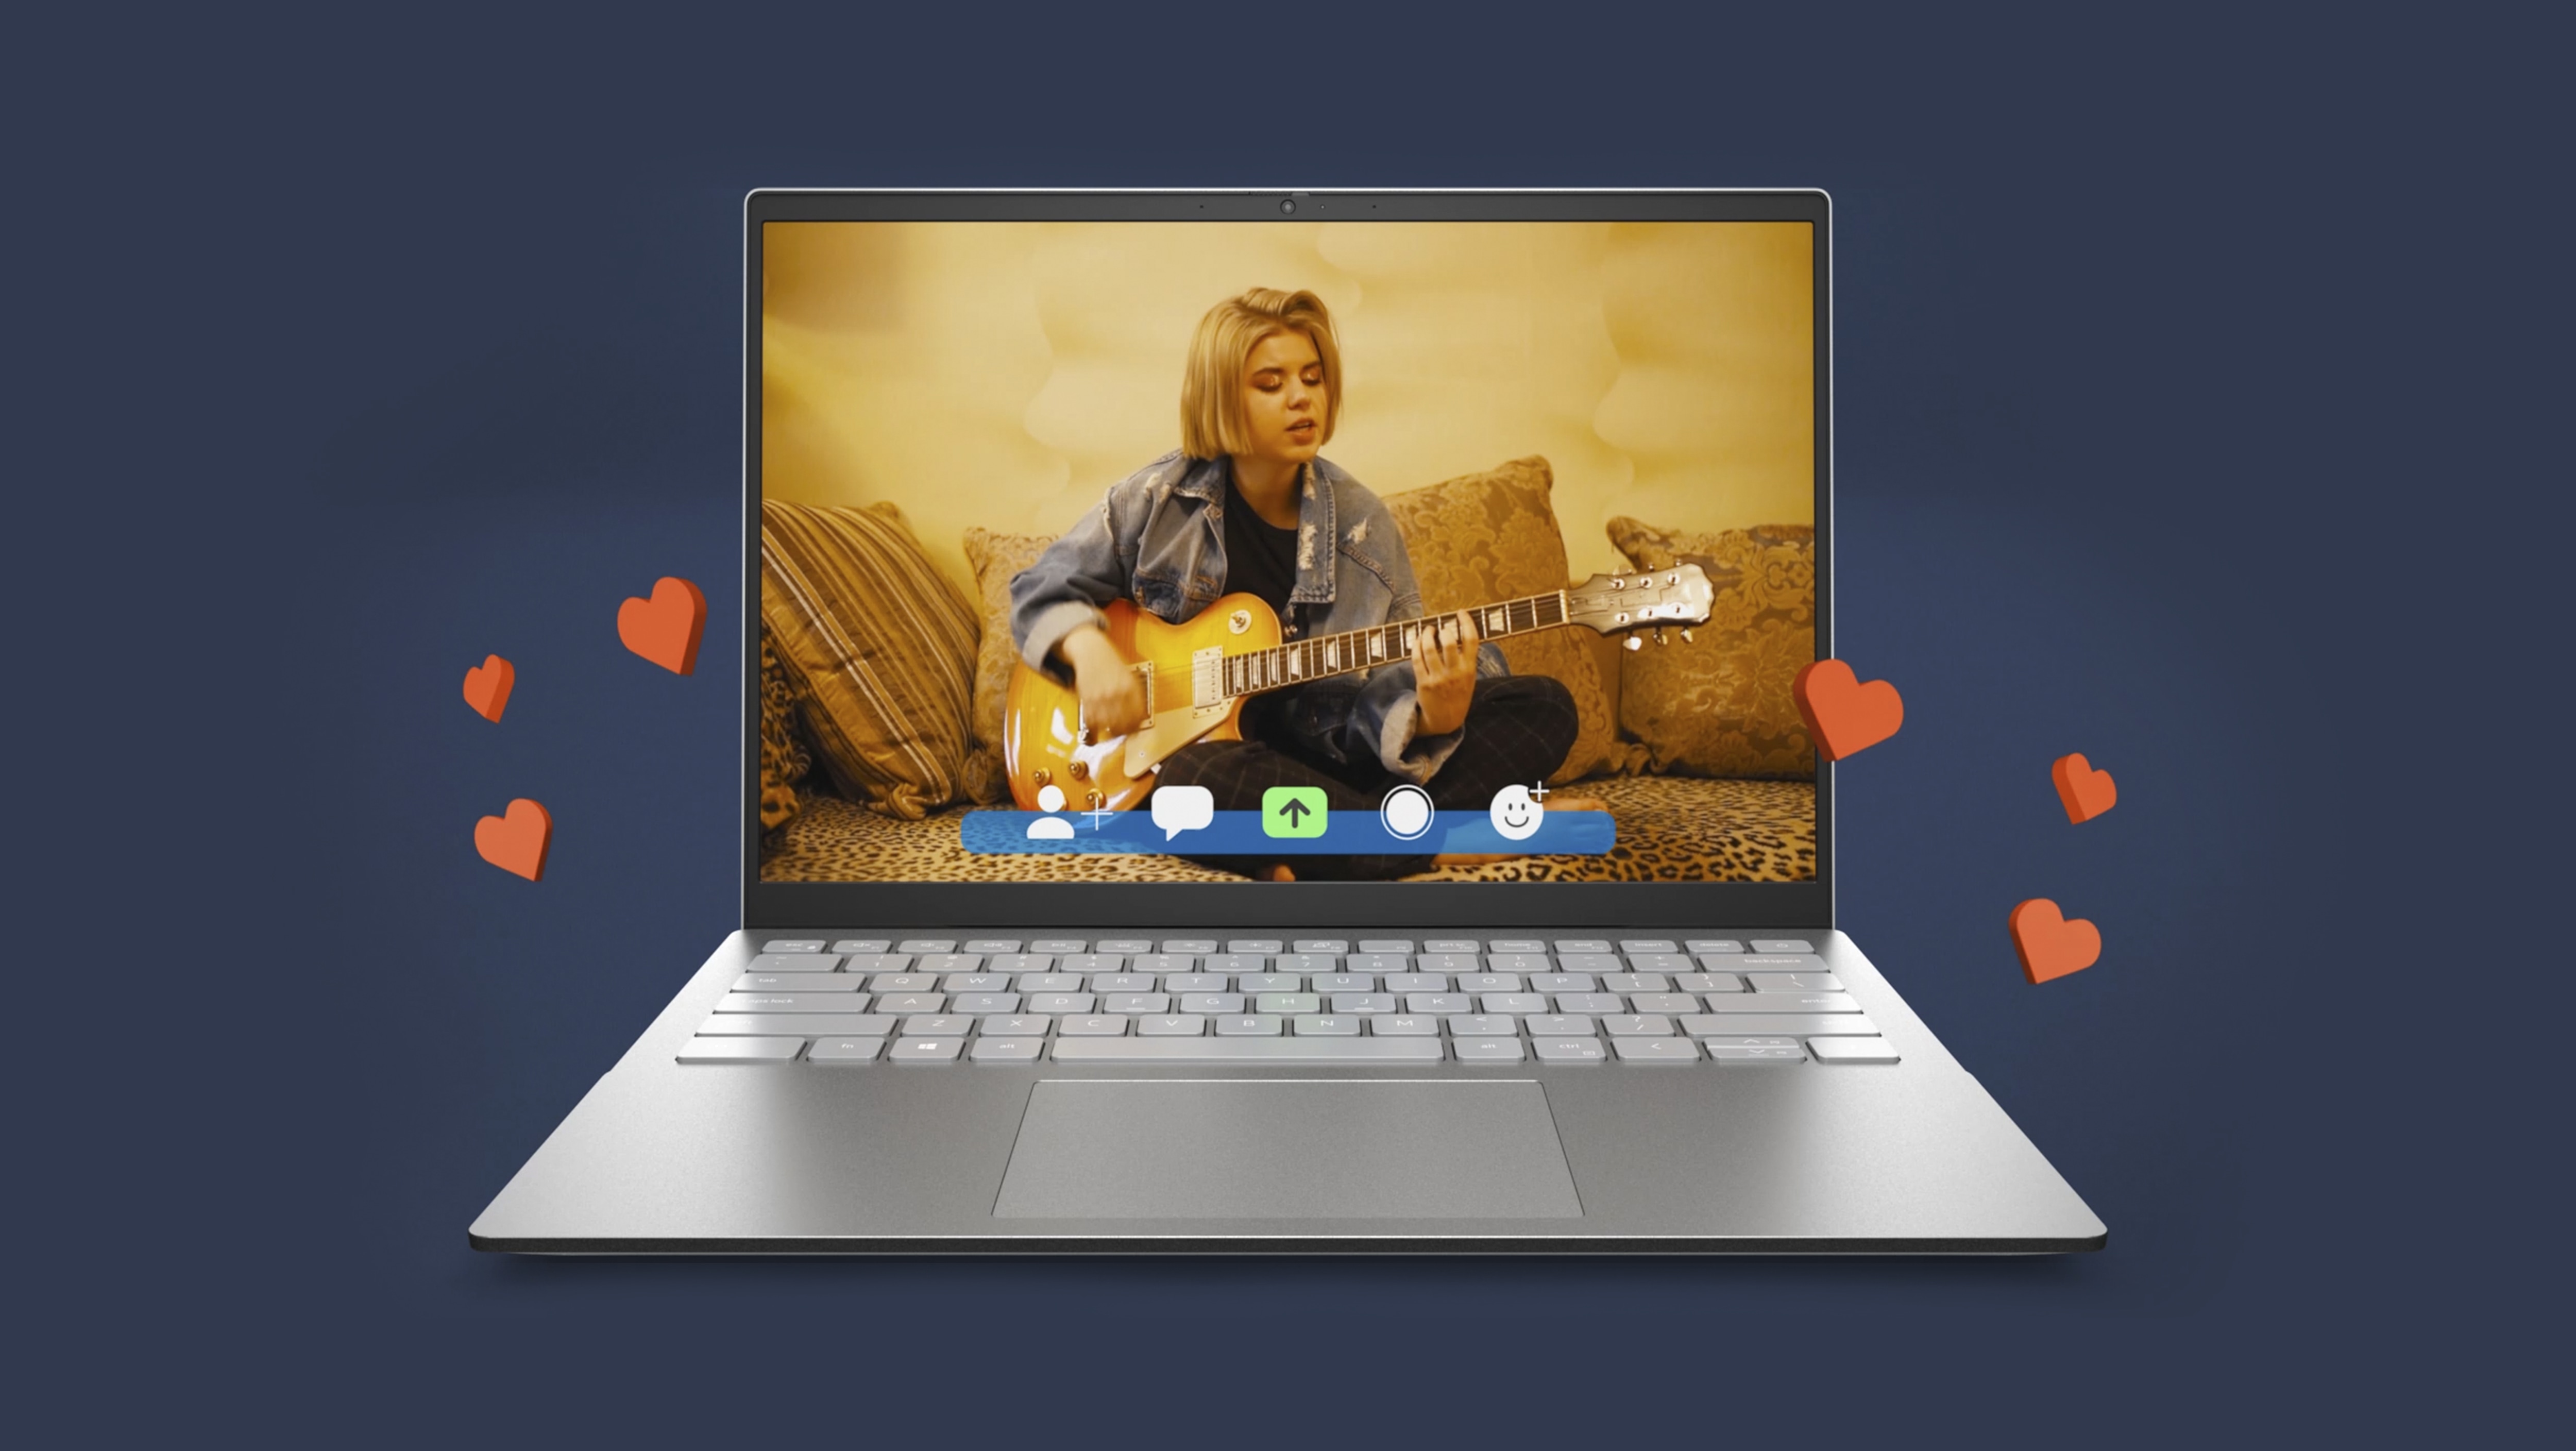 Bild eines Dell Inspiron 14 5425 mit einer sitzenden Frau, die Gitarre spielt, während rote Herzen aus dem Bildschirm steigen.